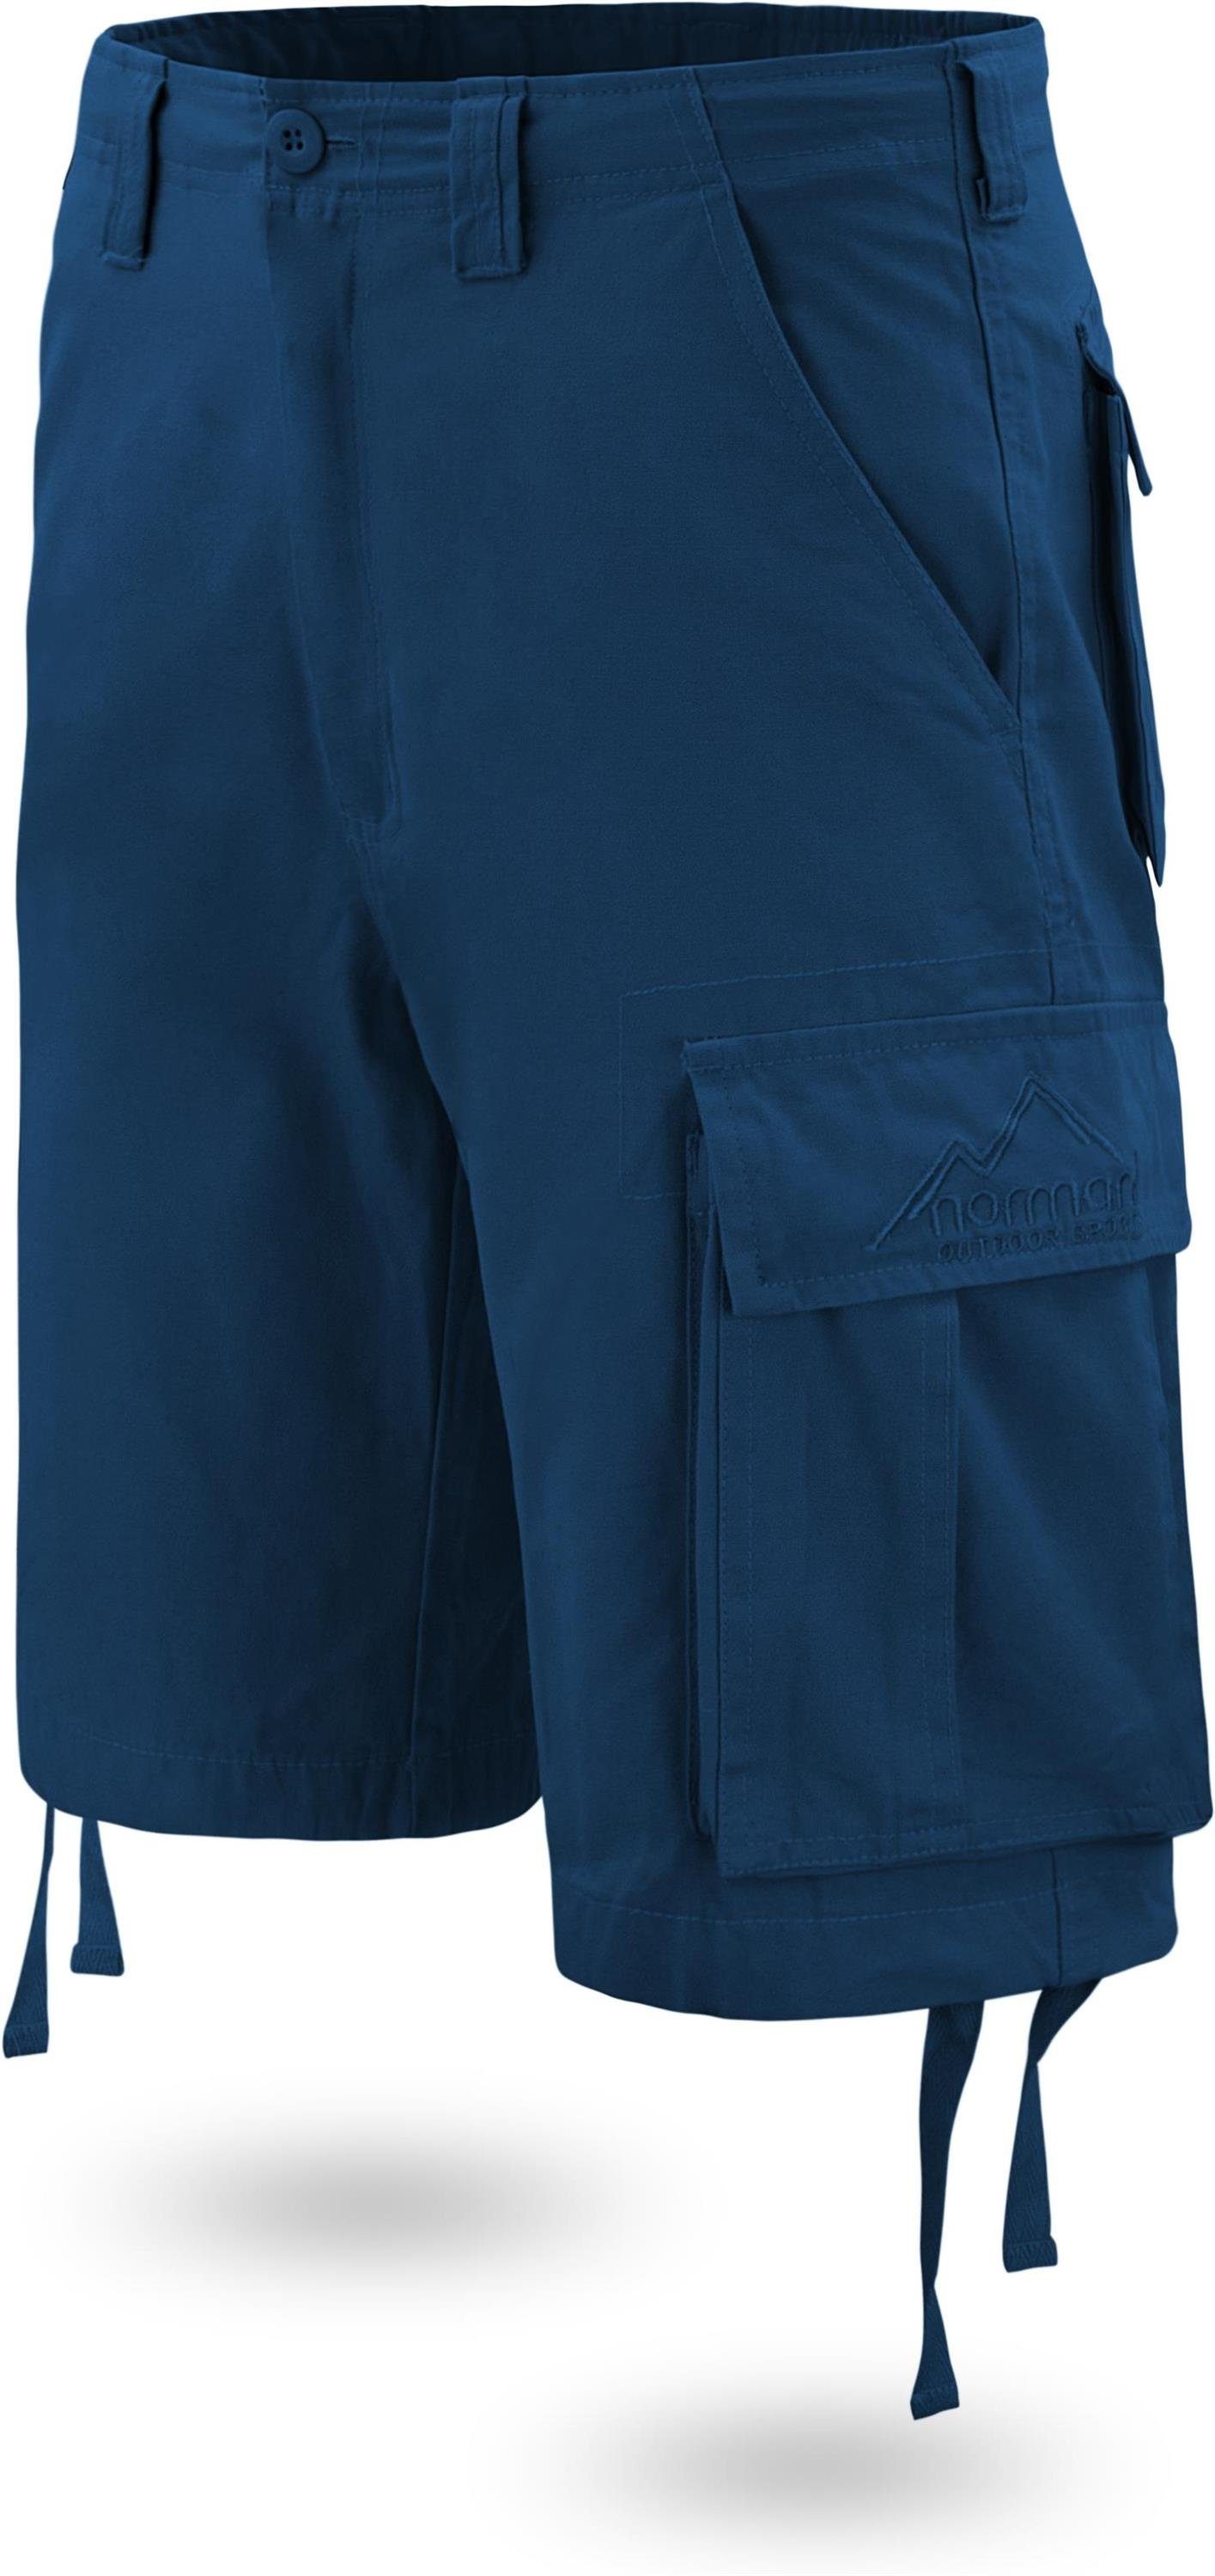 Shorts Navy Sommershorts Cargotaschen Herren aus 100% mit normani Kalahari Vintage kurze Bermudas Shorts Bio-Baumwolle